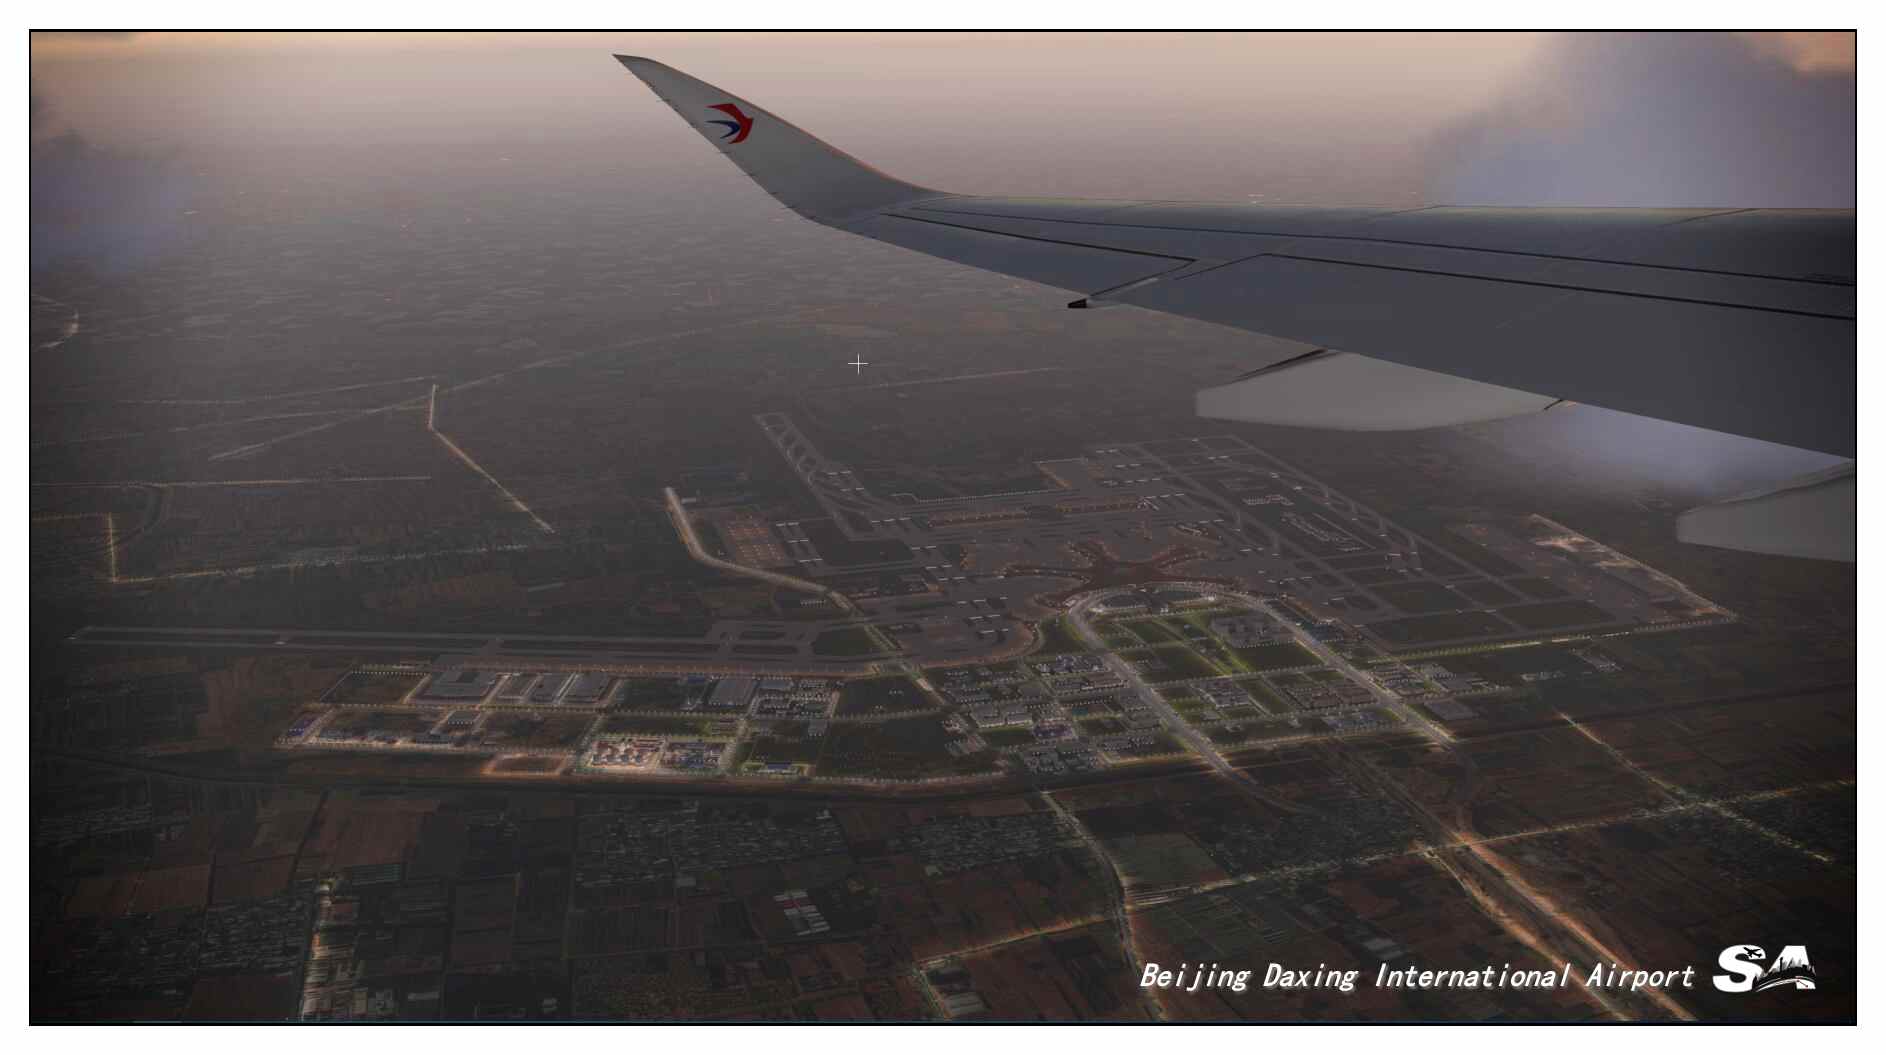 【X-Plane】ZBAD北京大兴国际机场-正式发布-2494 